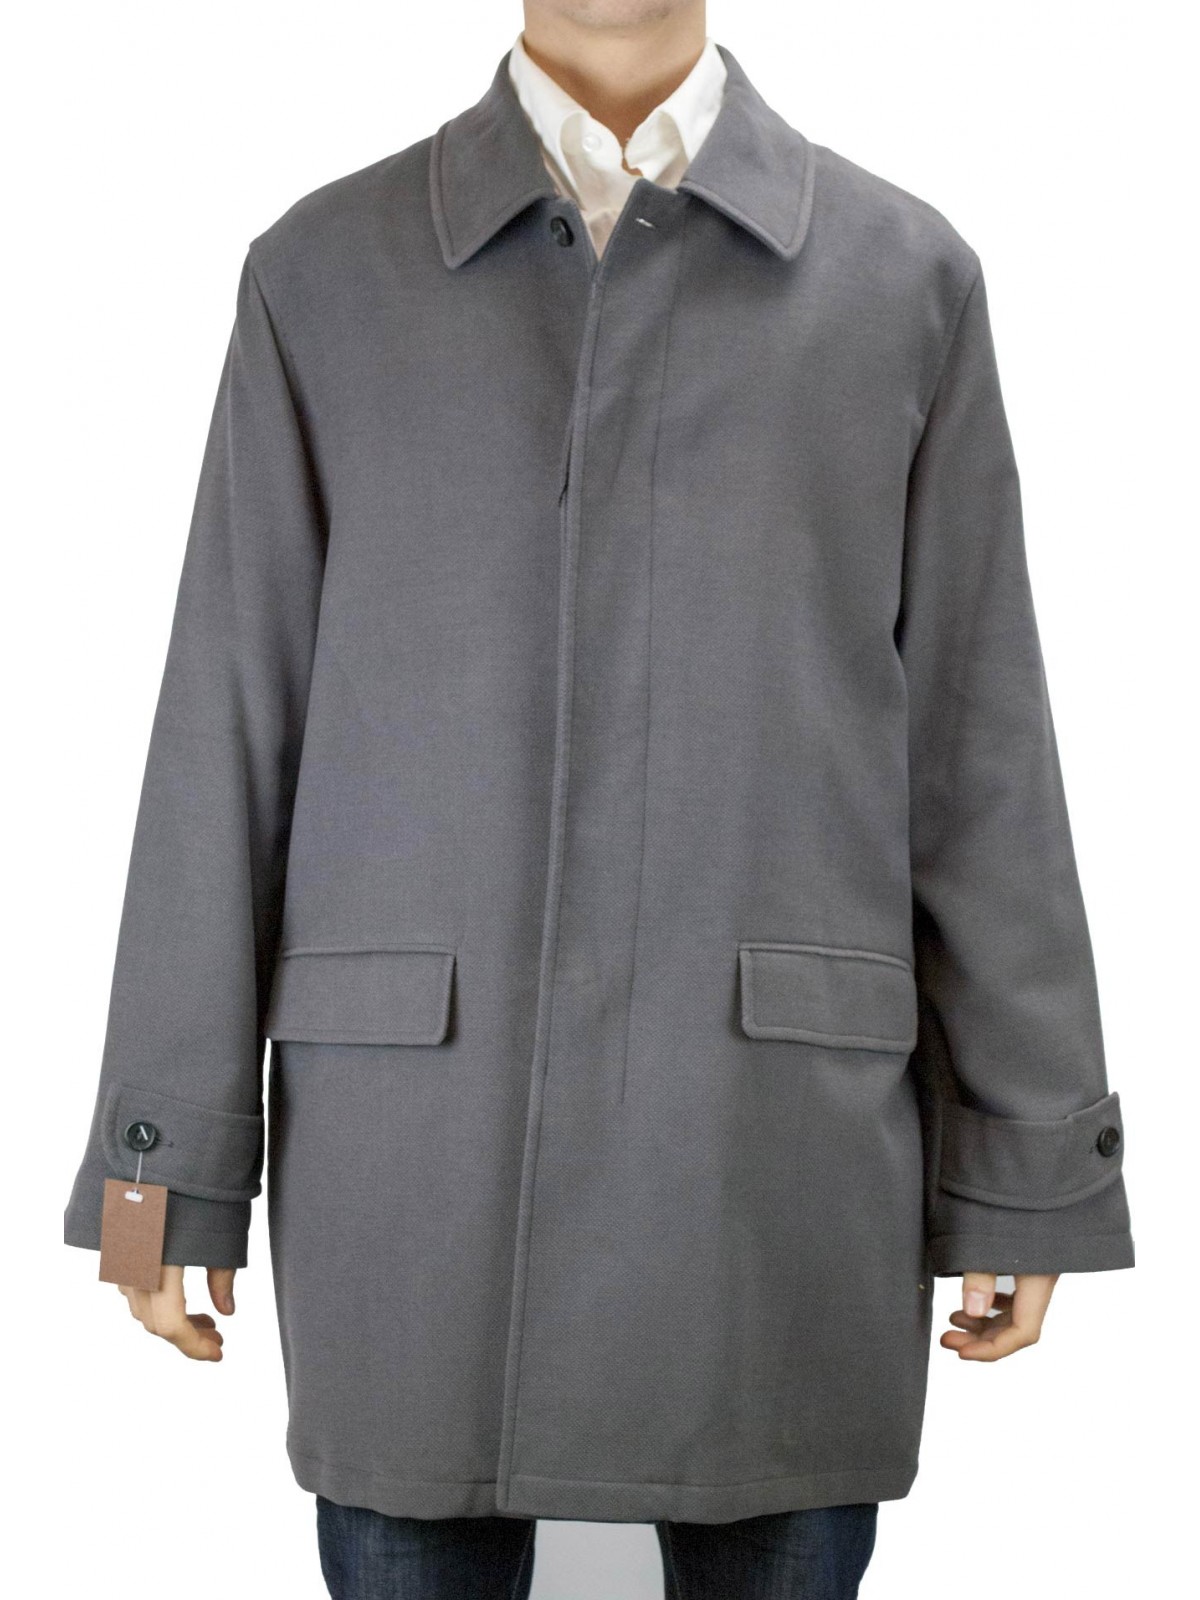 メンズロングジャケット50Lダークグレーハンマーベルベットオーバーコート-メンズスーツ、ブレザー、ジャケット